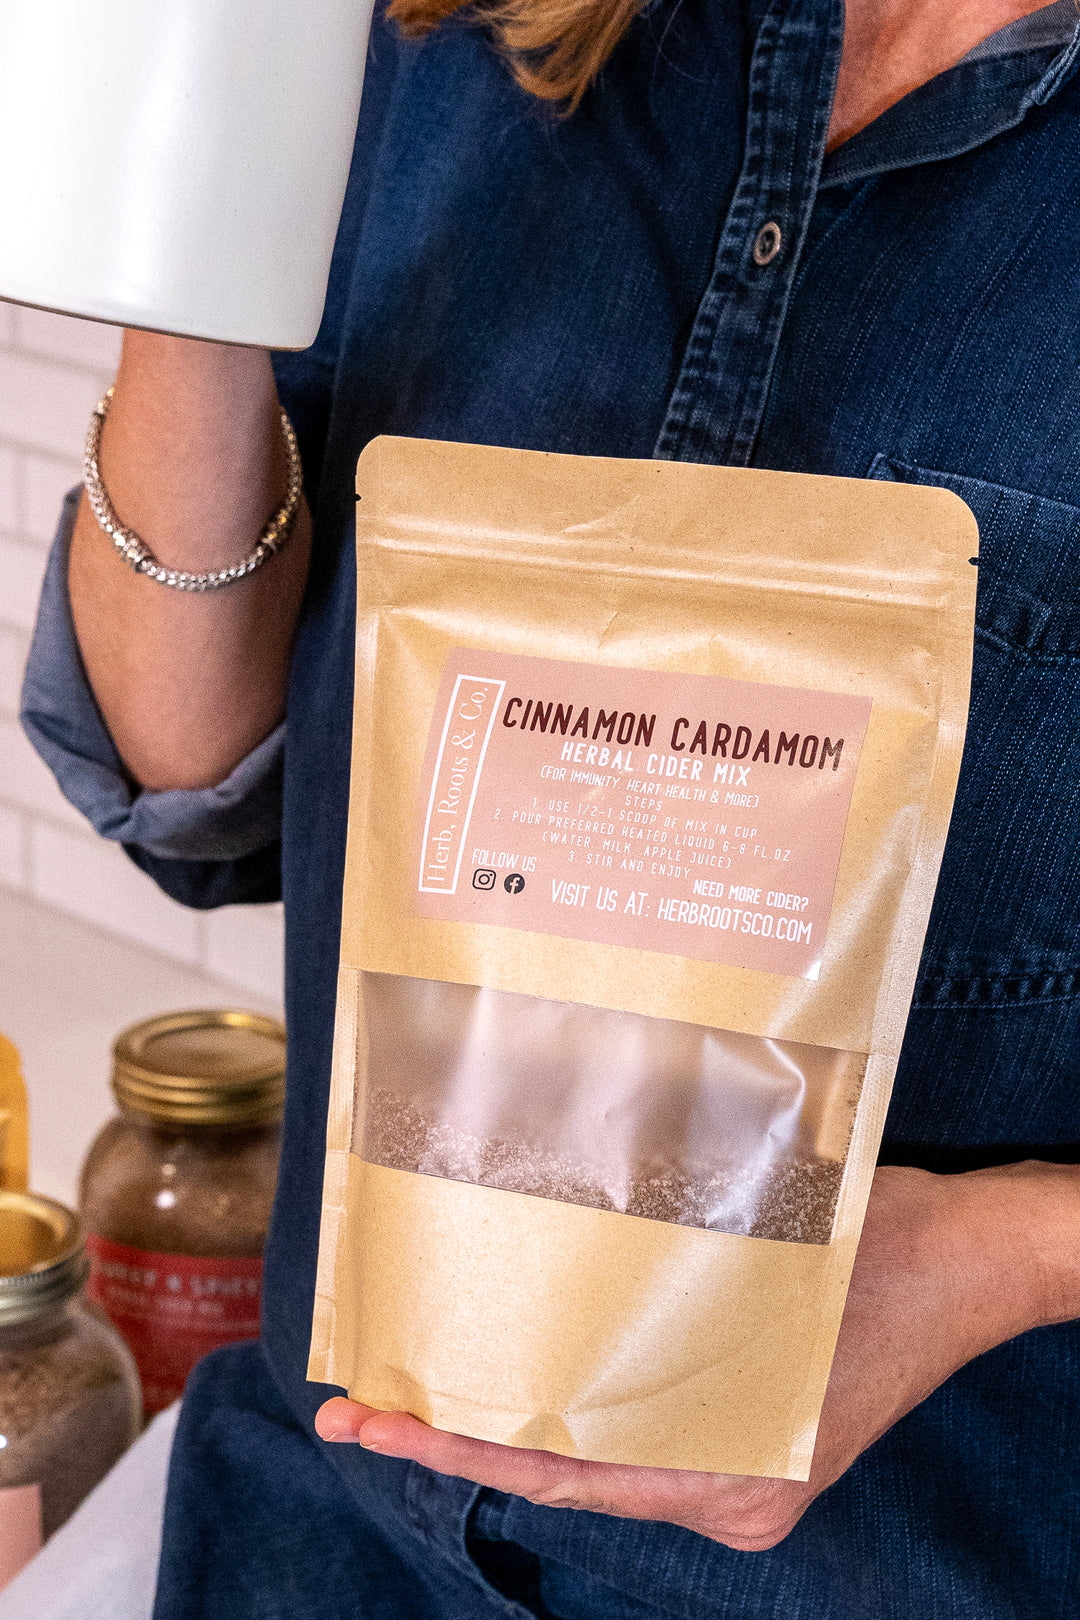 Cinnamon Cardamom